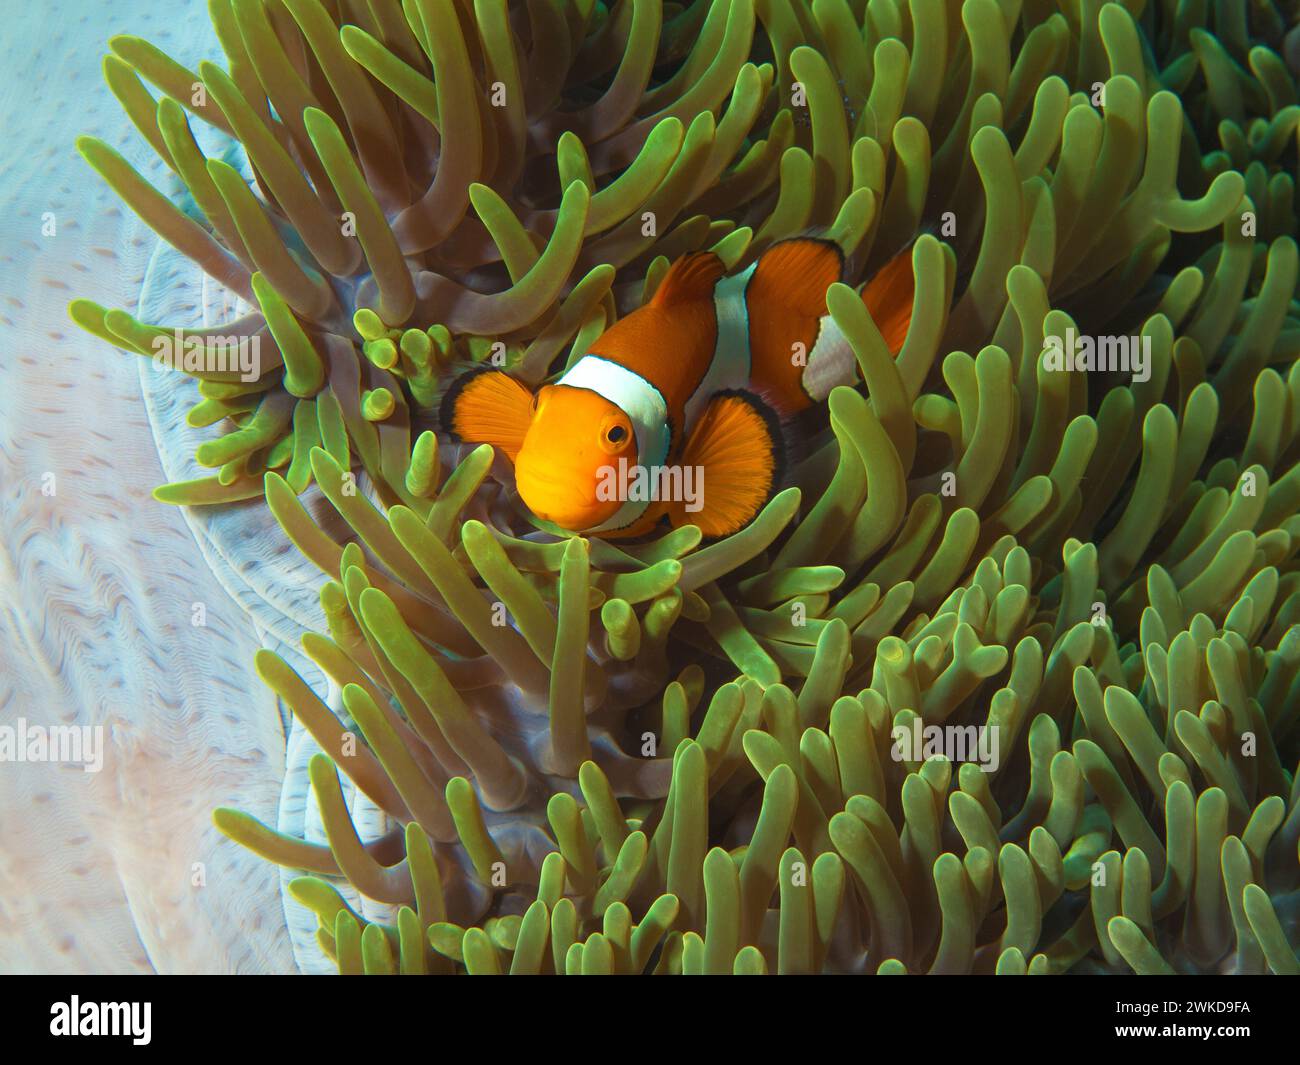 Los peces anemoneses son muy curiosos: Nemofish en su magnífica anémona (Heteractis magnifica) en el arrecife de coral, fotografía submarina tomada en Raja Ampat Foto de stock